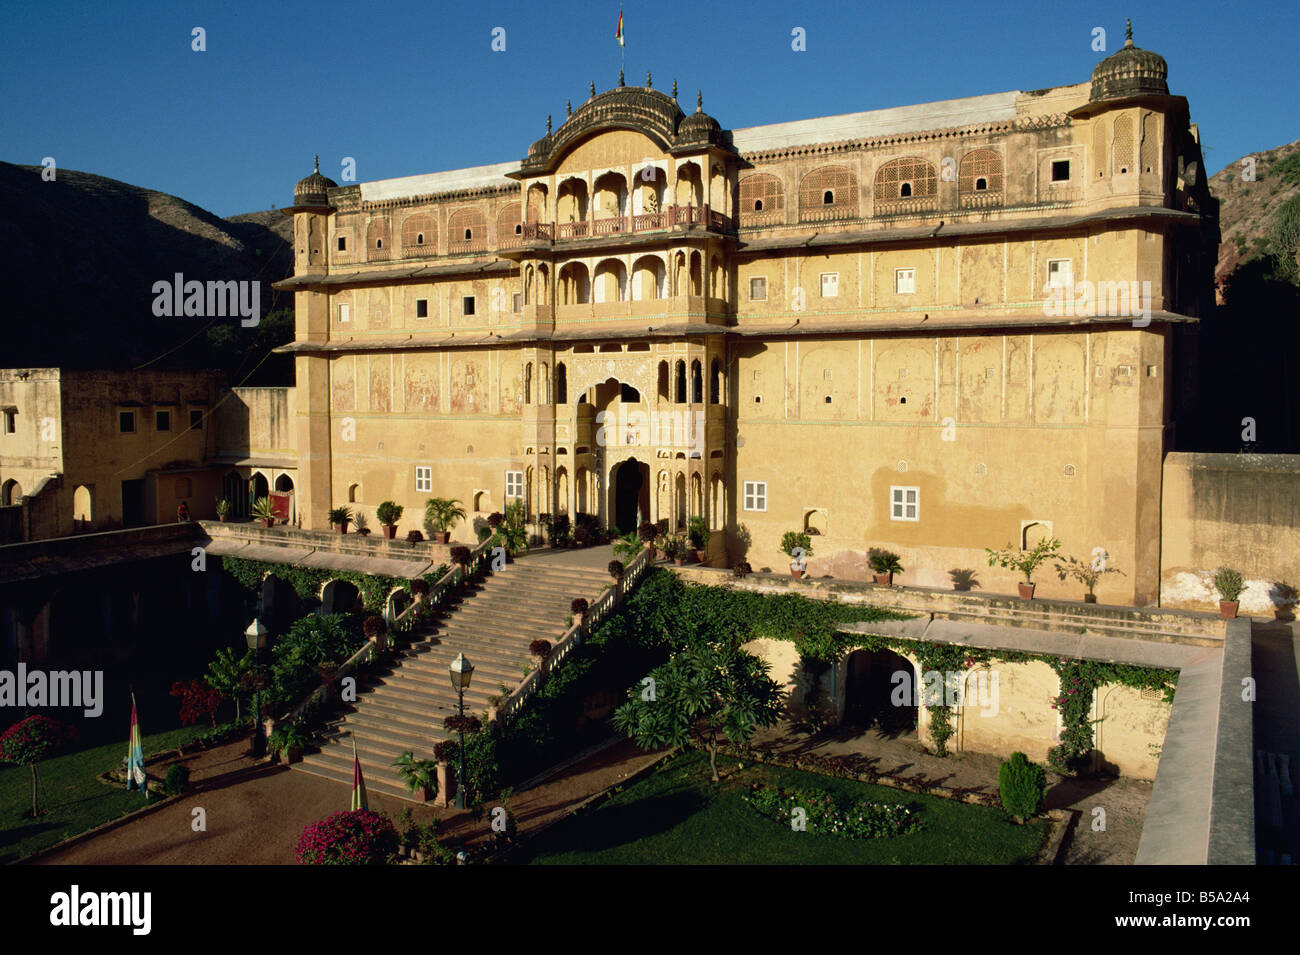 Der Rajput Samode Palast heute ein Hotel in der Nähe von Jaipur Rajasthan Staat Indien Asien Stockfoto